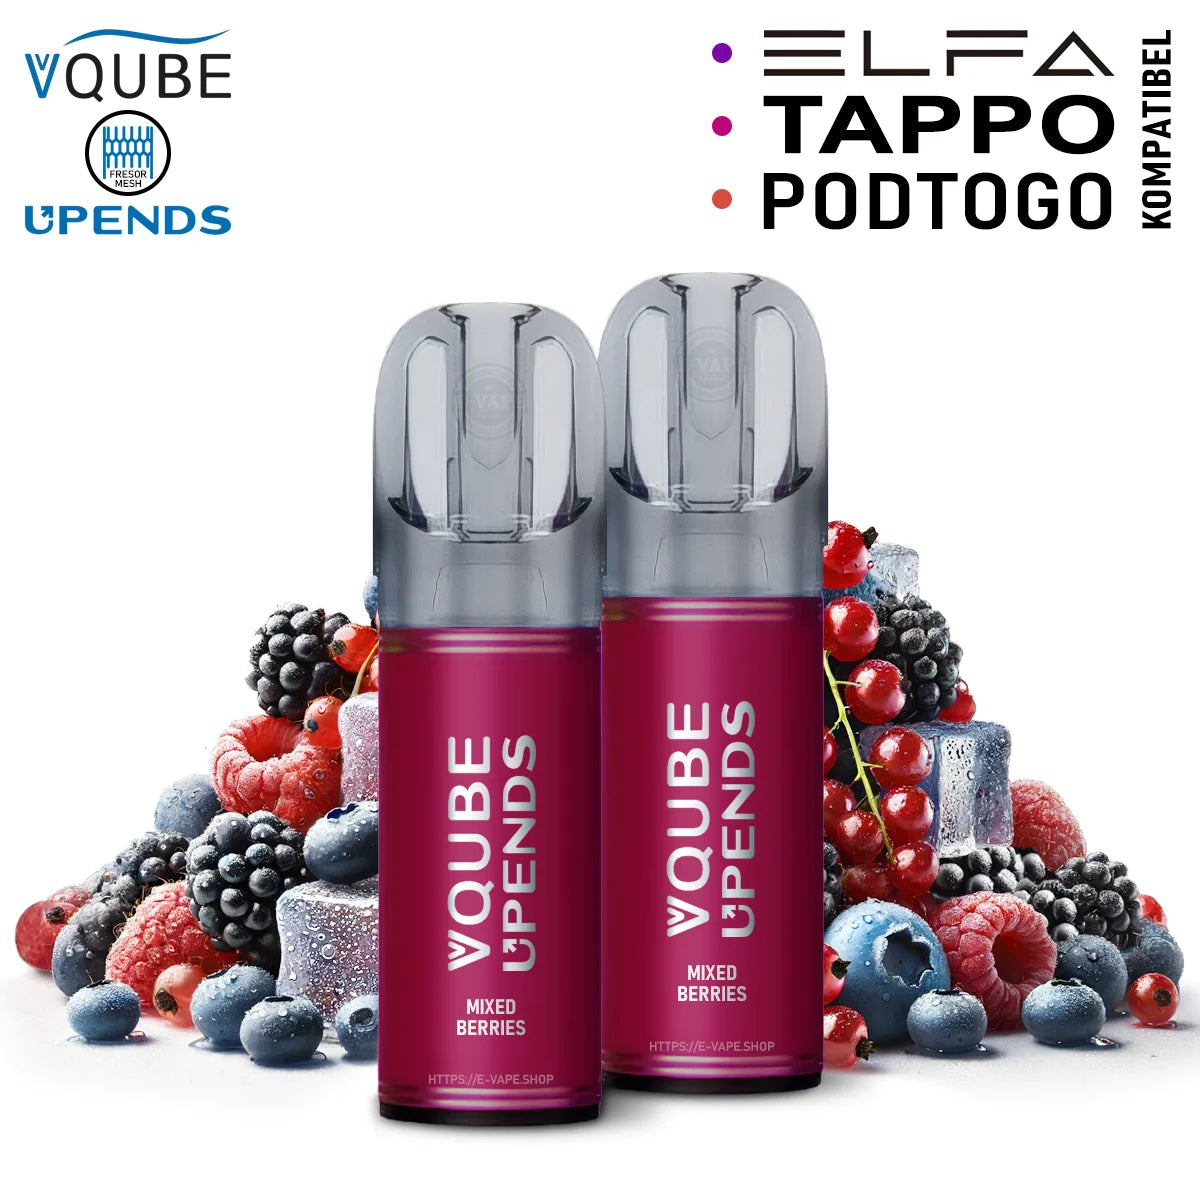 Vqube Upends Pod Mixed Berries 20mg ELFA / Tappo / Pod2Go